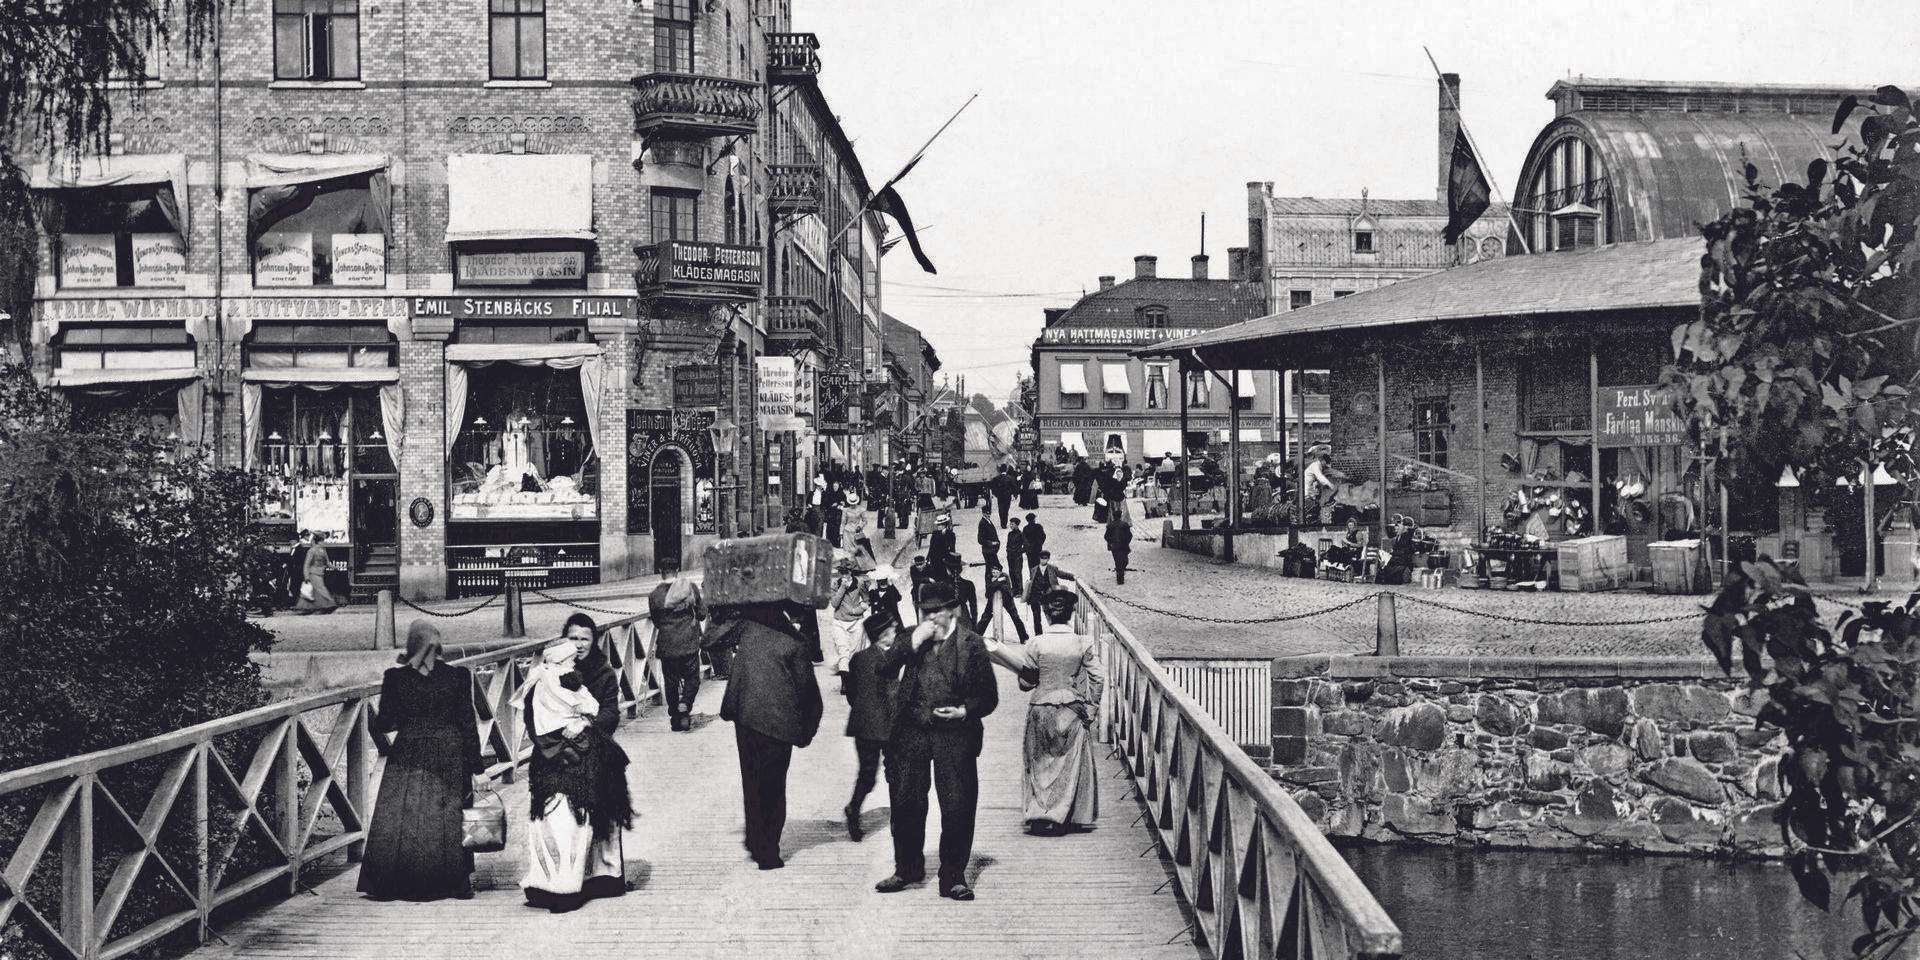 Denna bild från Basarbron år 1901 visar ett tvärsnitt av göteborgare ur olika åldrar och samhällsskikt. Göteborgsk pigfranska hade säkert varit gångbar på bron. 